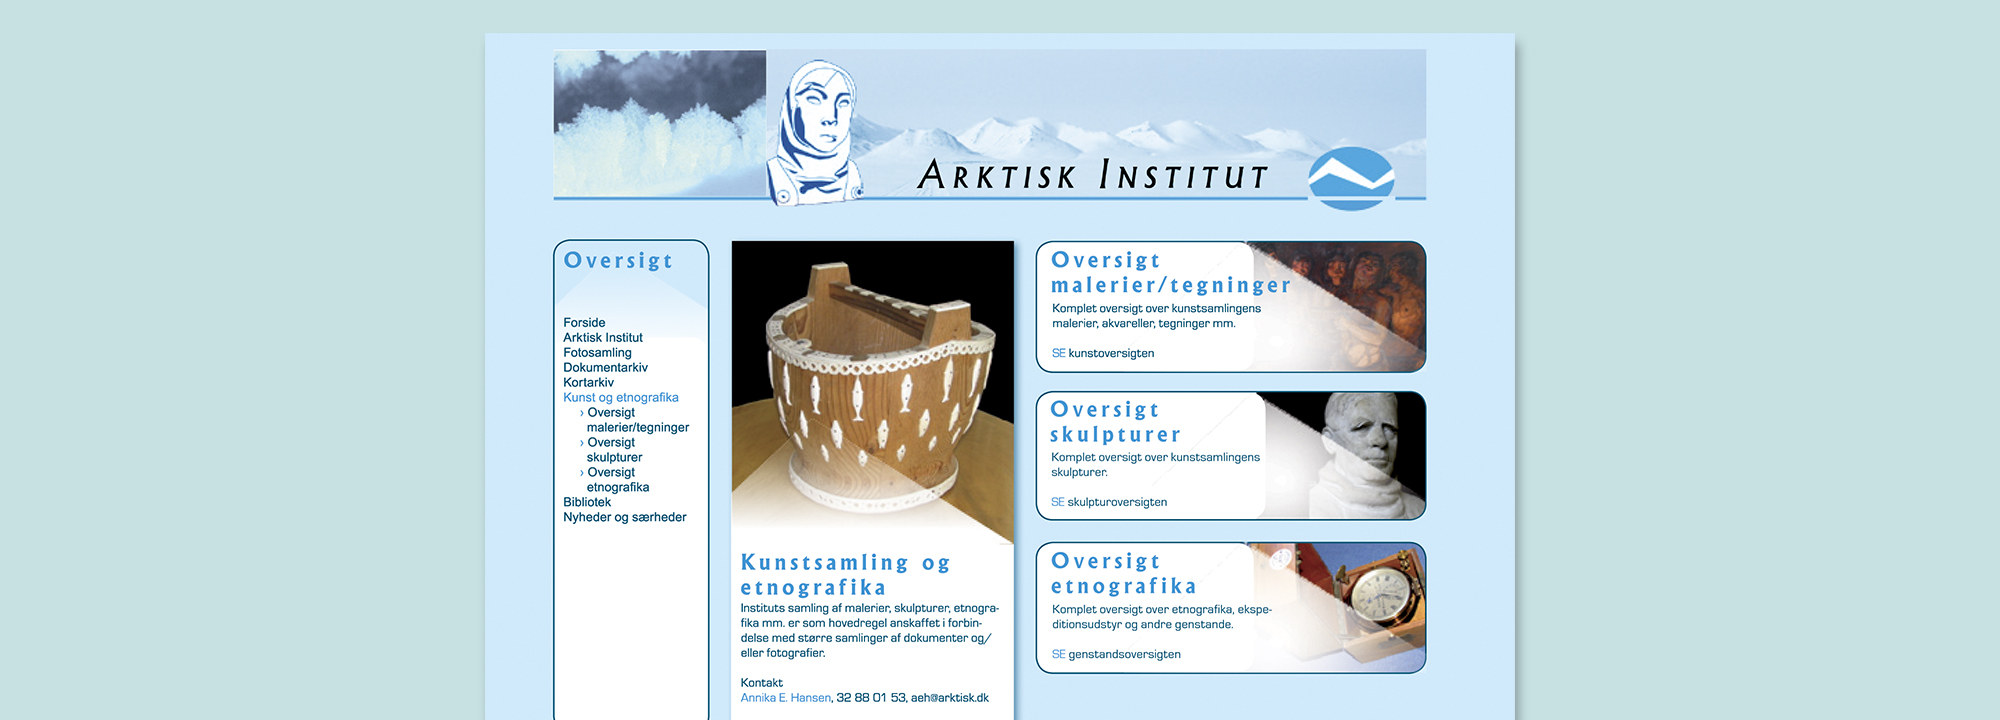 arktisk Instituts hjemmeside